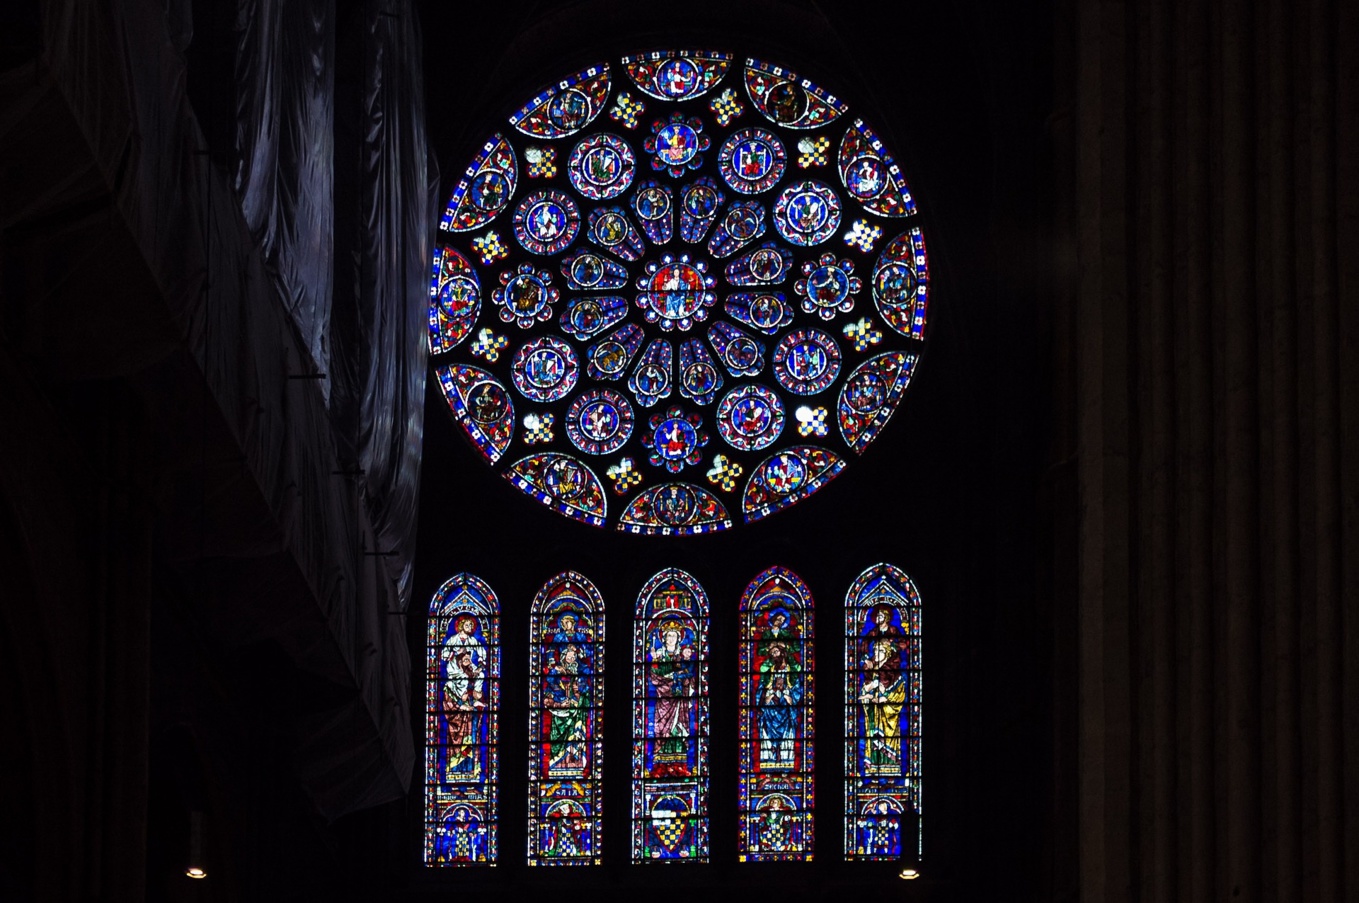 La Cathédrale de Chartres prête une partie de son trésor pour une exposition